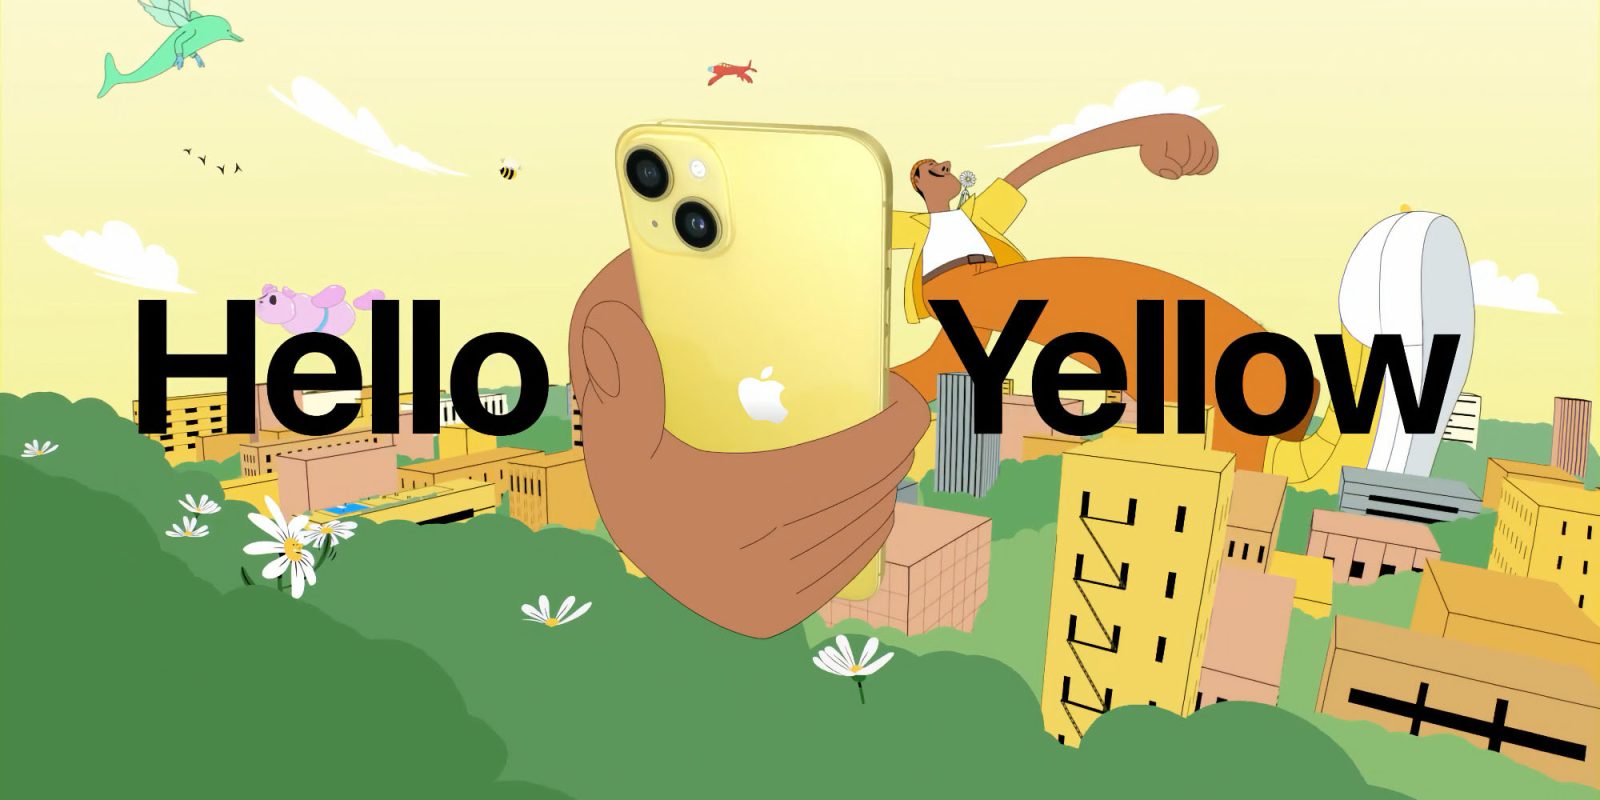 yellow iPhone 14